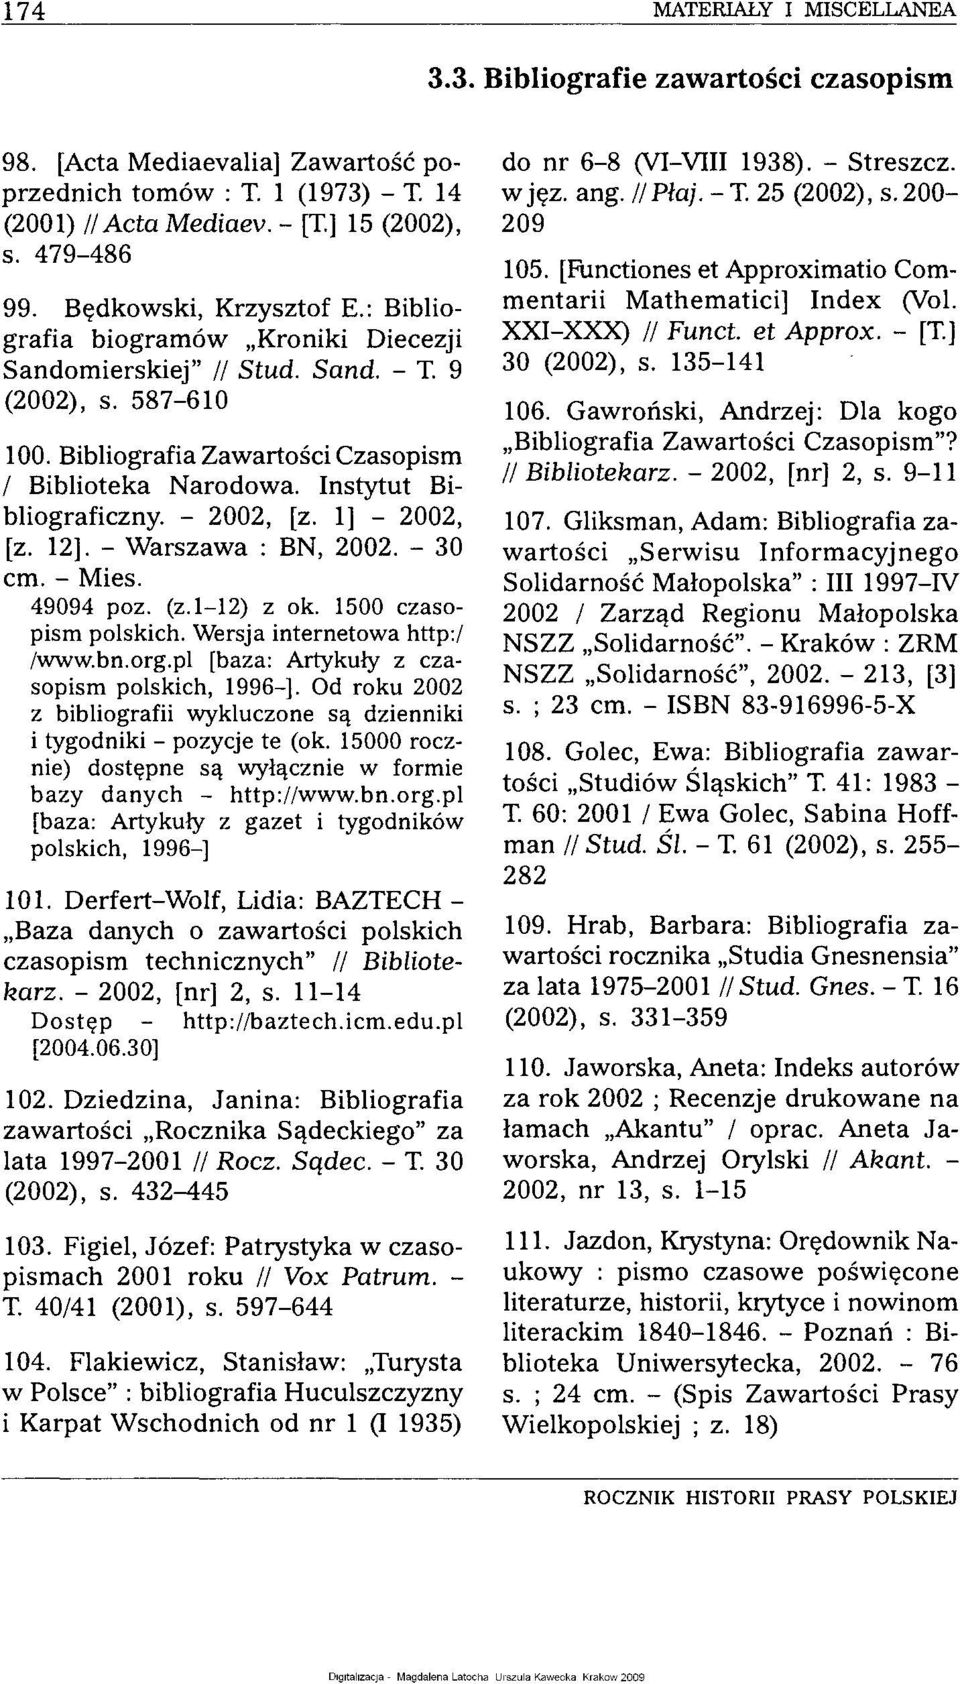 Instytut Bibliograficzny. - 2002, [z. 1] - 2002, [z. 12]. - Warszawa : BN, 2002. - 30 cm. - Mies. 49094 poz. (z. 1-12) z ok. 1500 czasopism polskich. Wersja internetowa http:/ /www.bn.org.